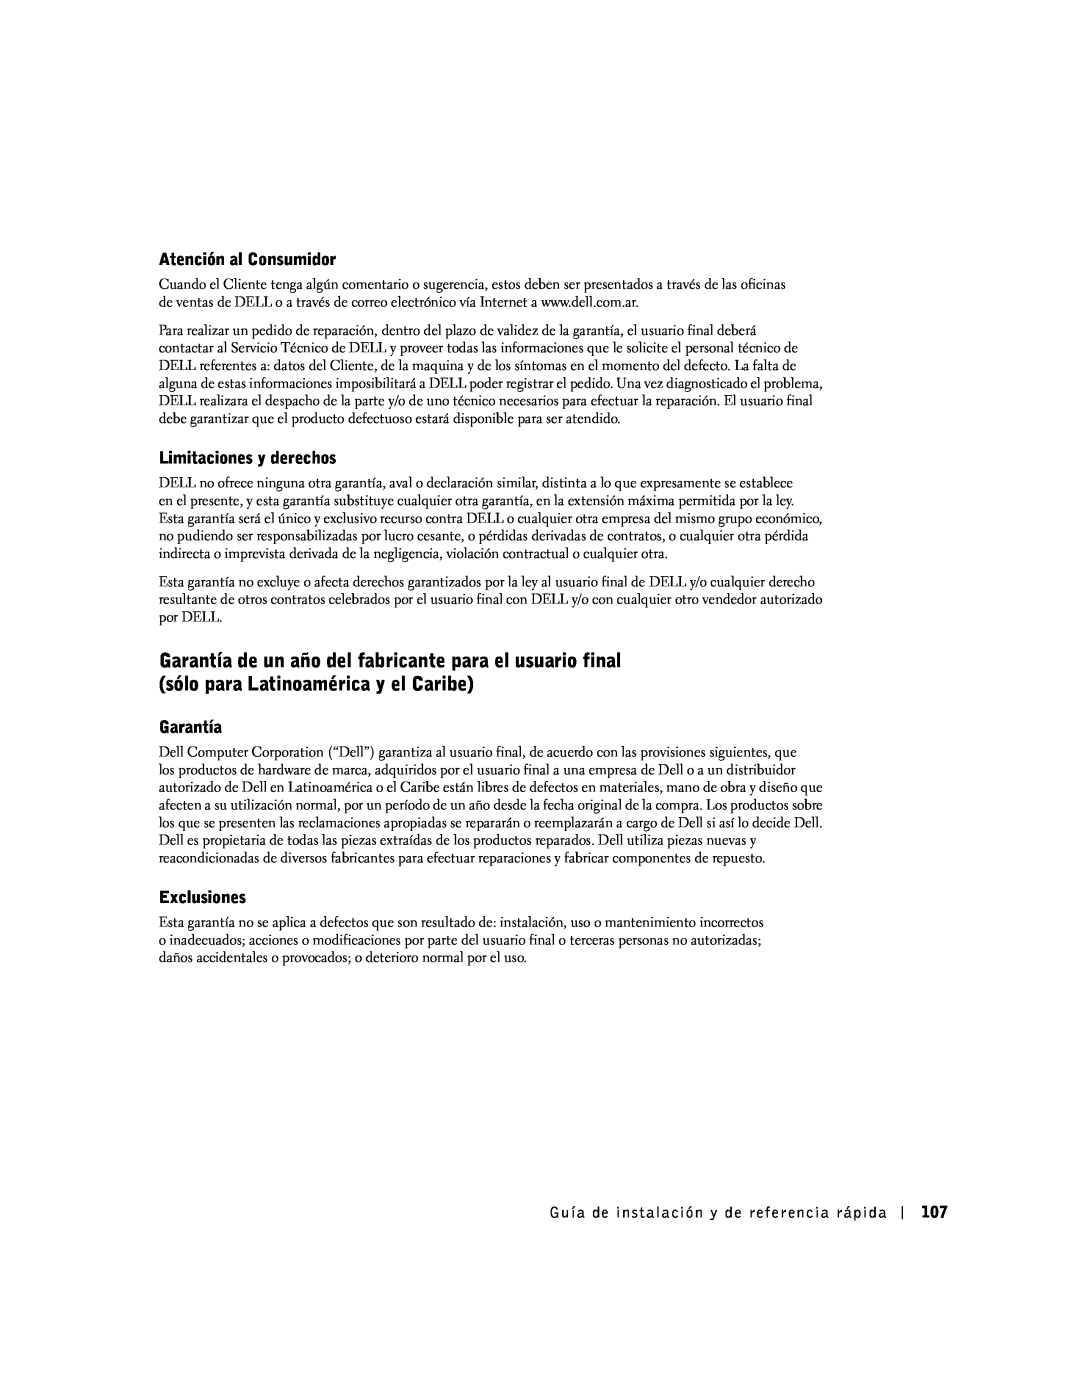 Dell SX manual Atención al Consumidor, Limitaciones y derechos, Garantía, Exclusiones 